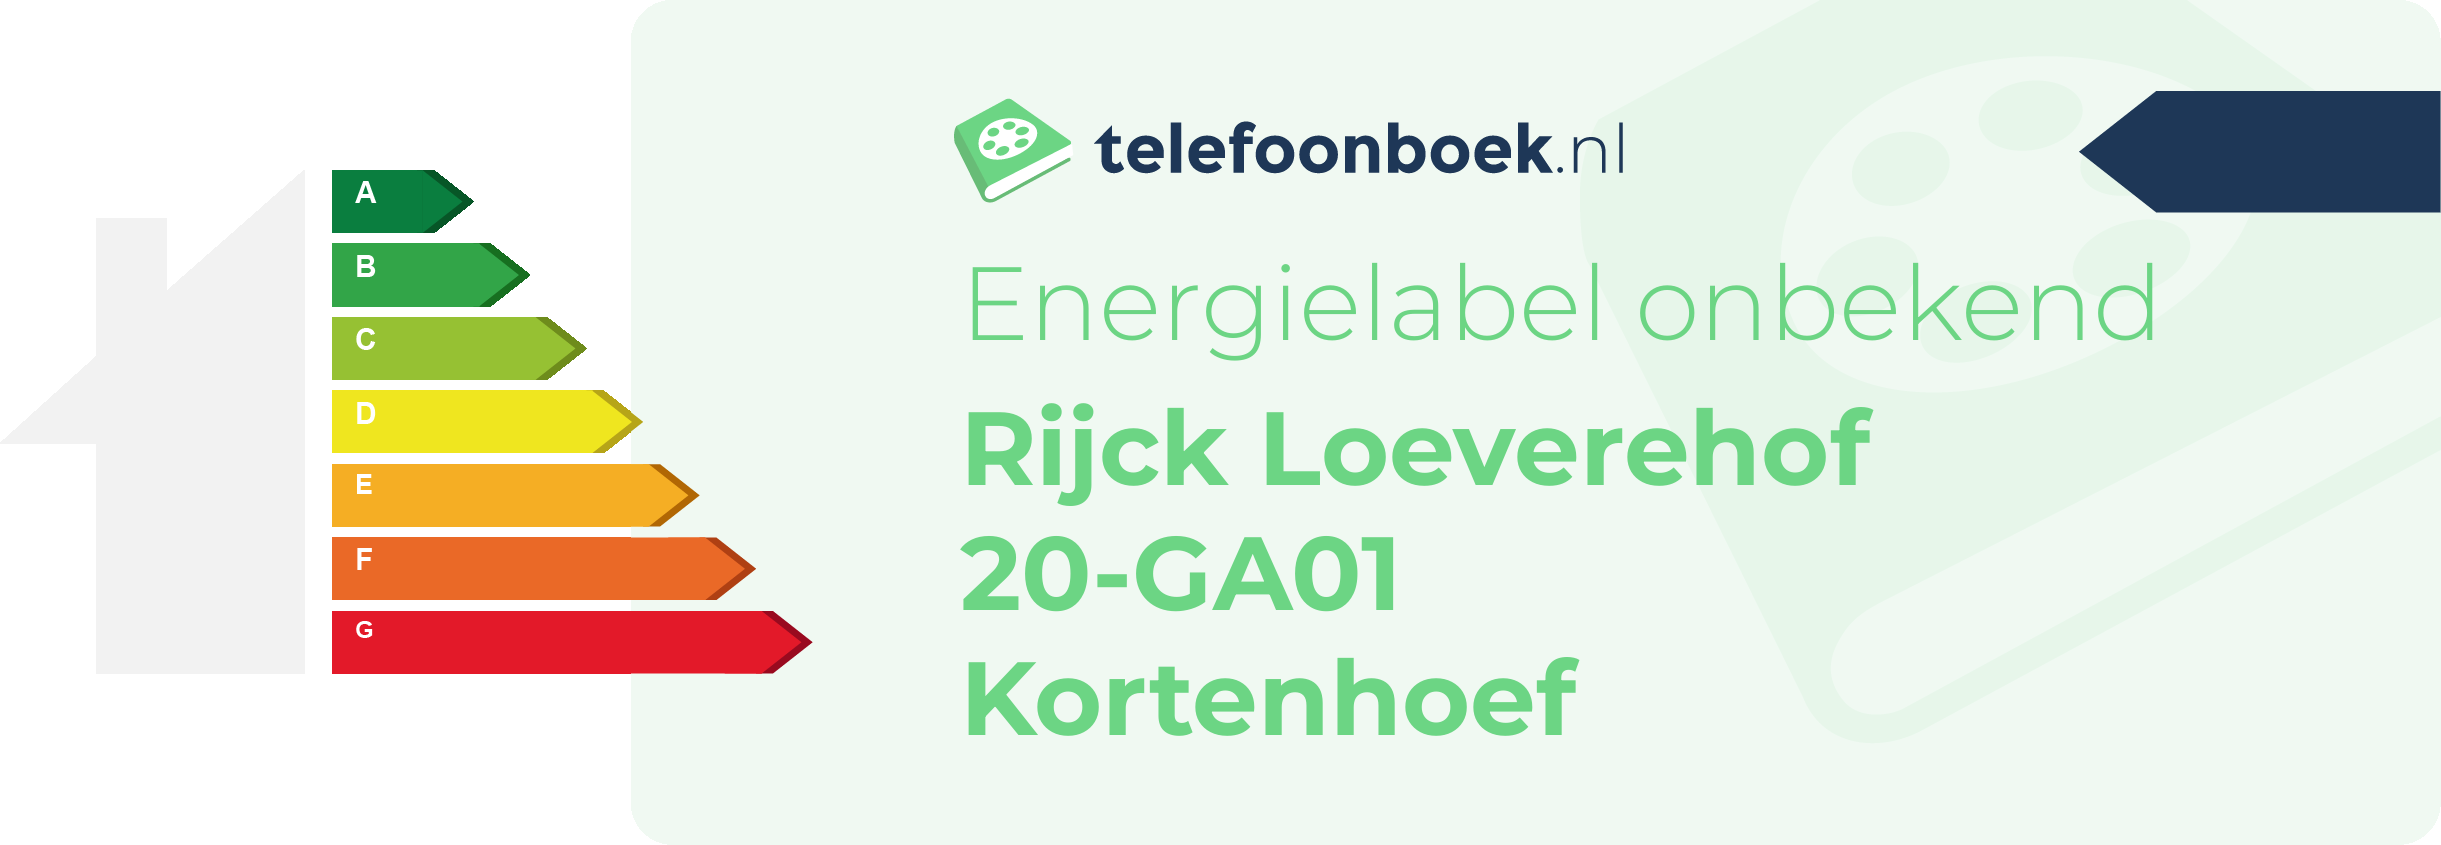 Energielabel Rijck Loeverehof 20-GA01 Kortenhoef